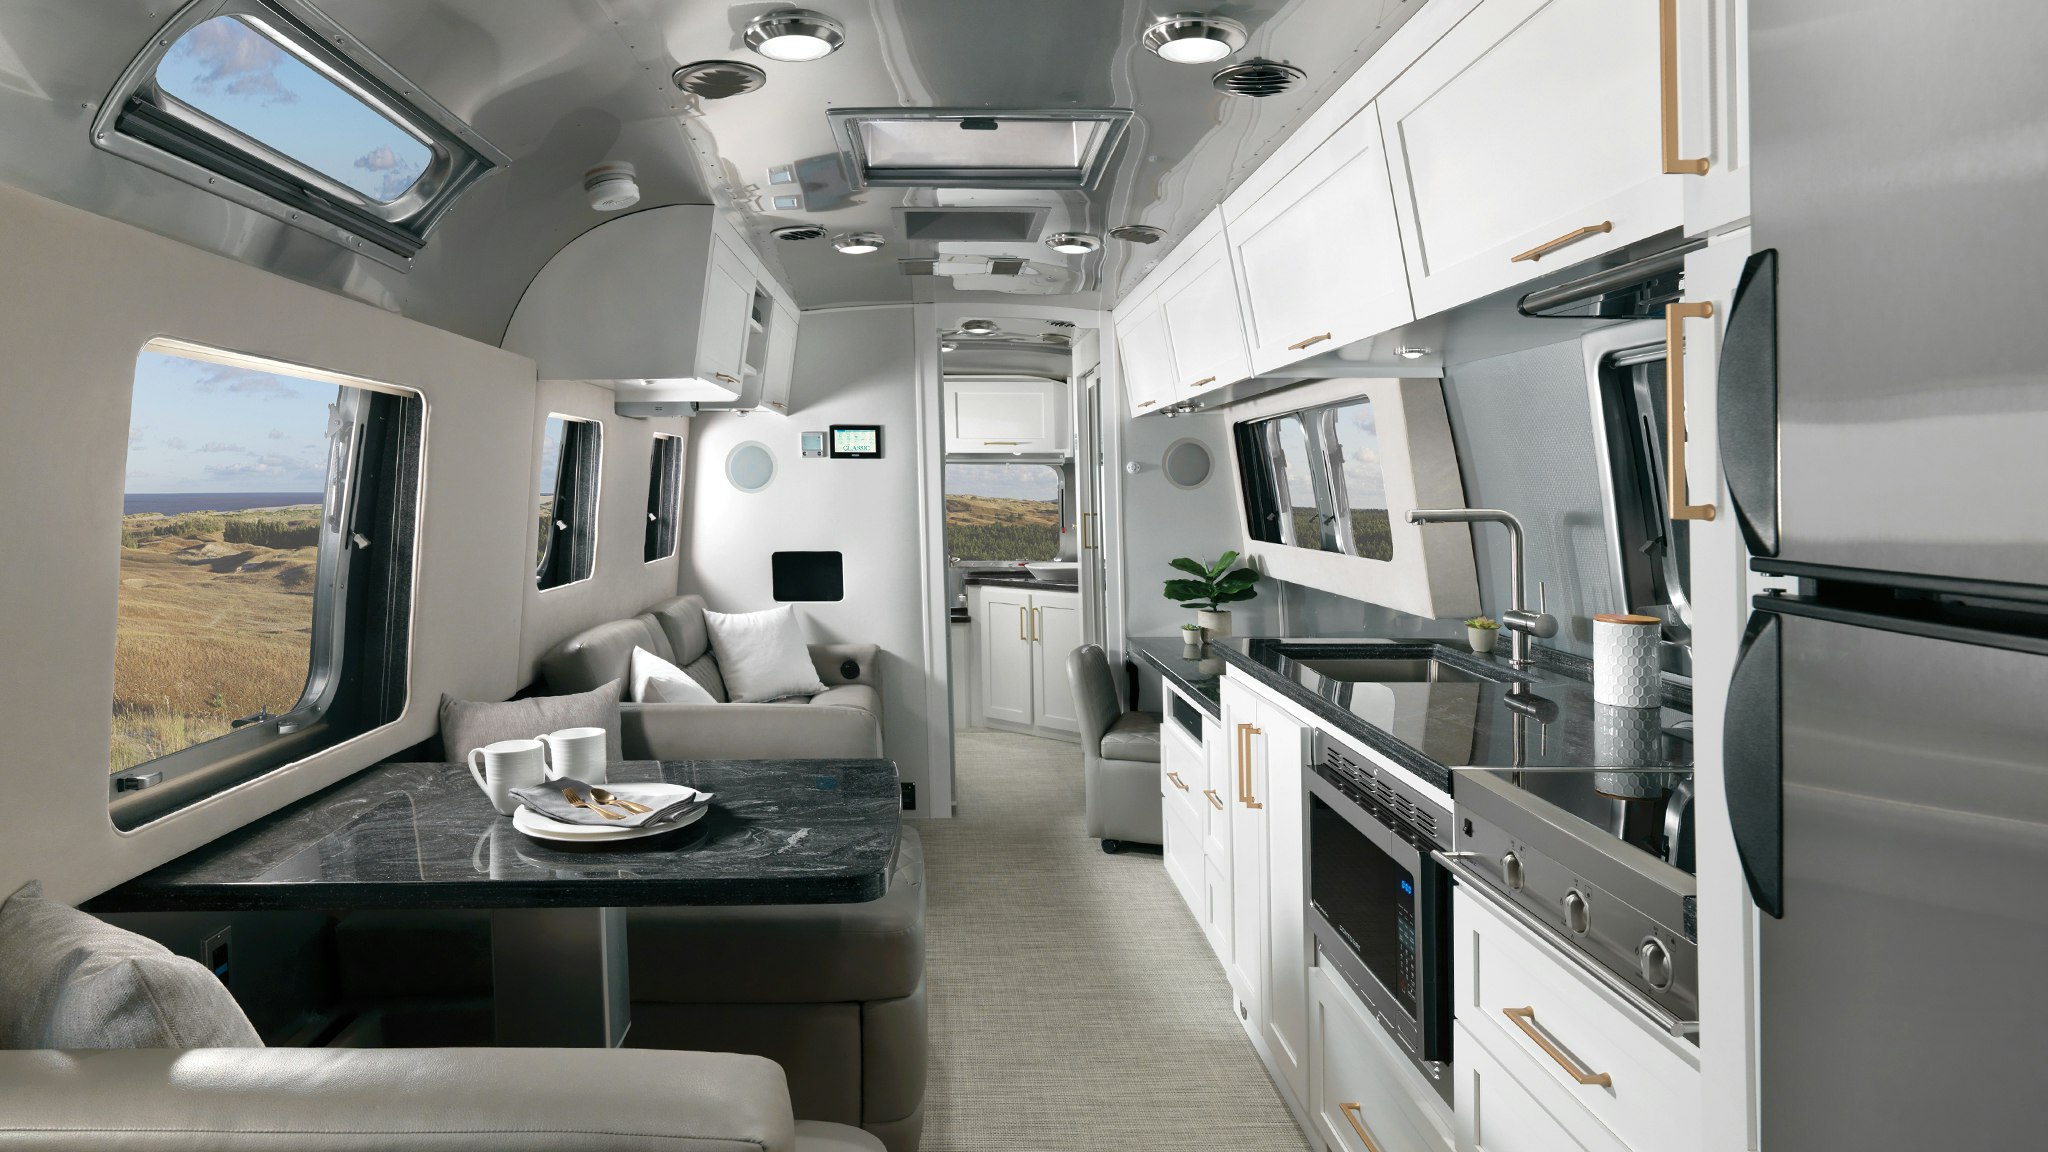 Airstream Classic 2020 Comfort White Interior Decor Desktop Feature ?auto=format&crop=edges&fit=crop